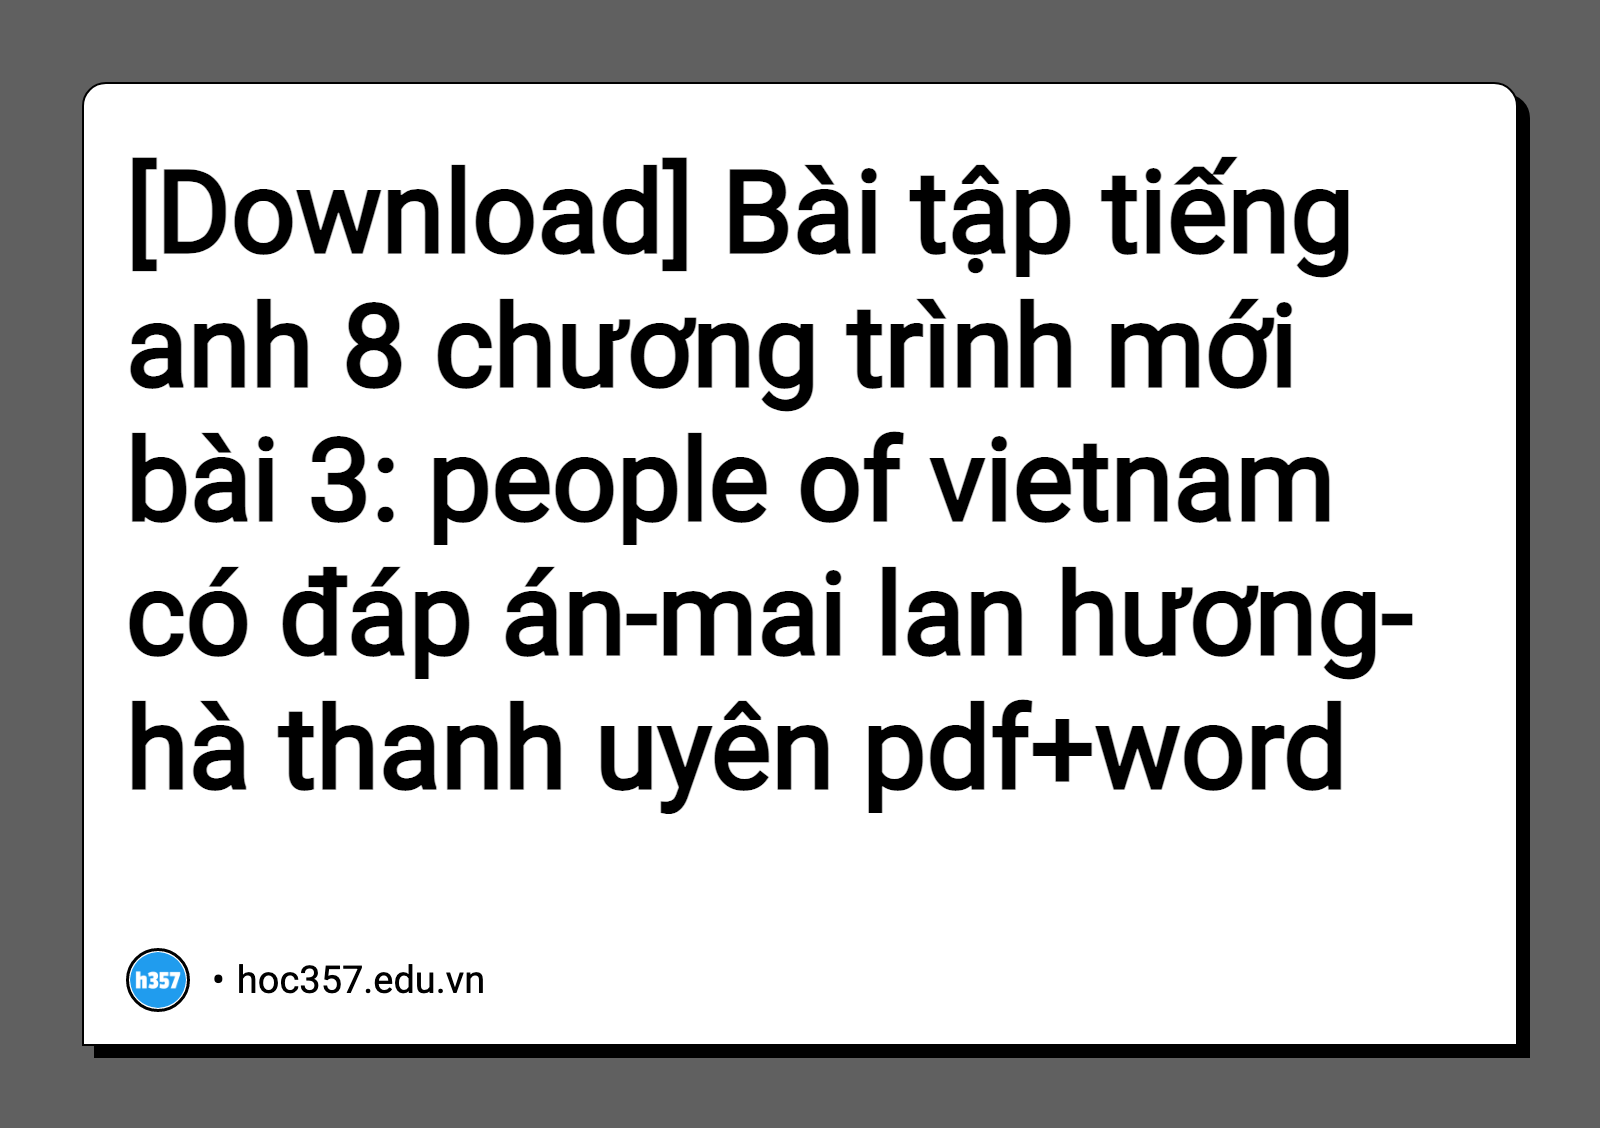 Hình minh họa Bài tập tiếng anh 8 chương trình mới bài 3: people of vietnam có đáp án-mai lan hương-hà thanh uyên